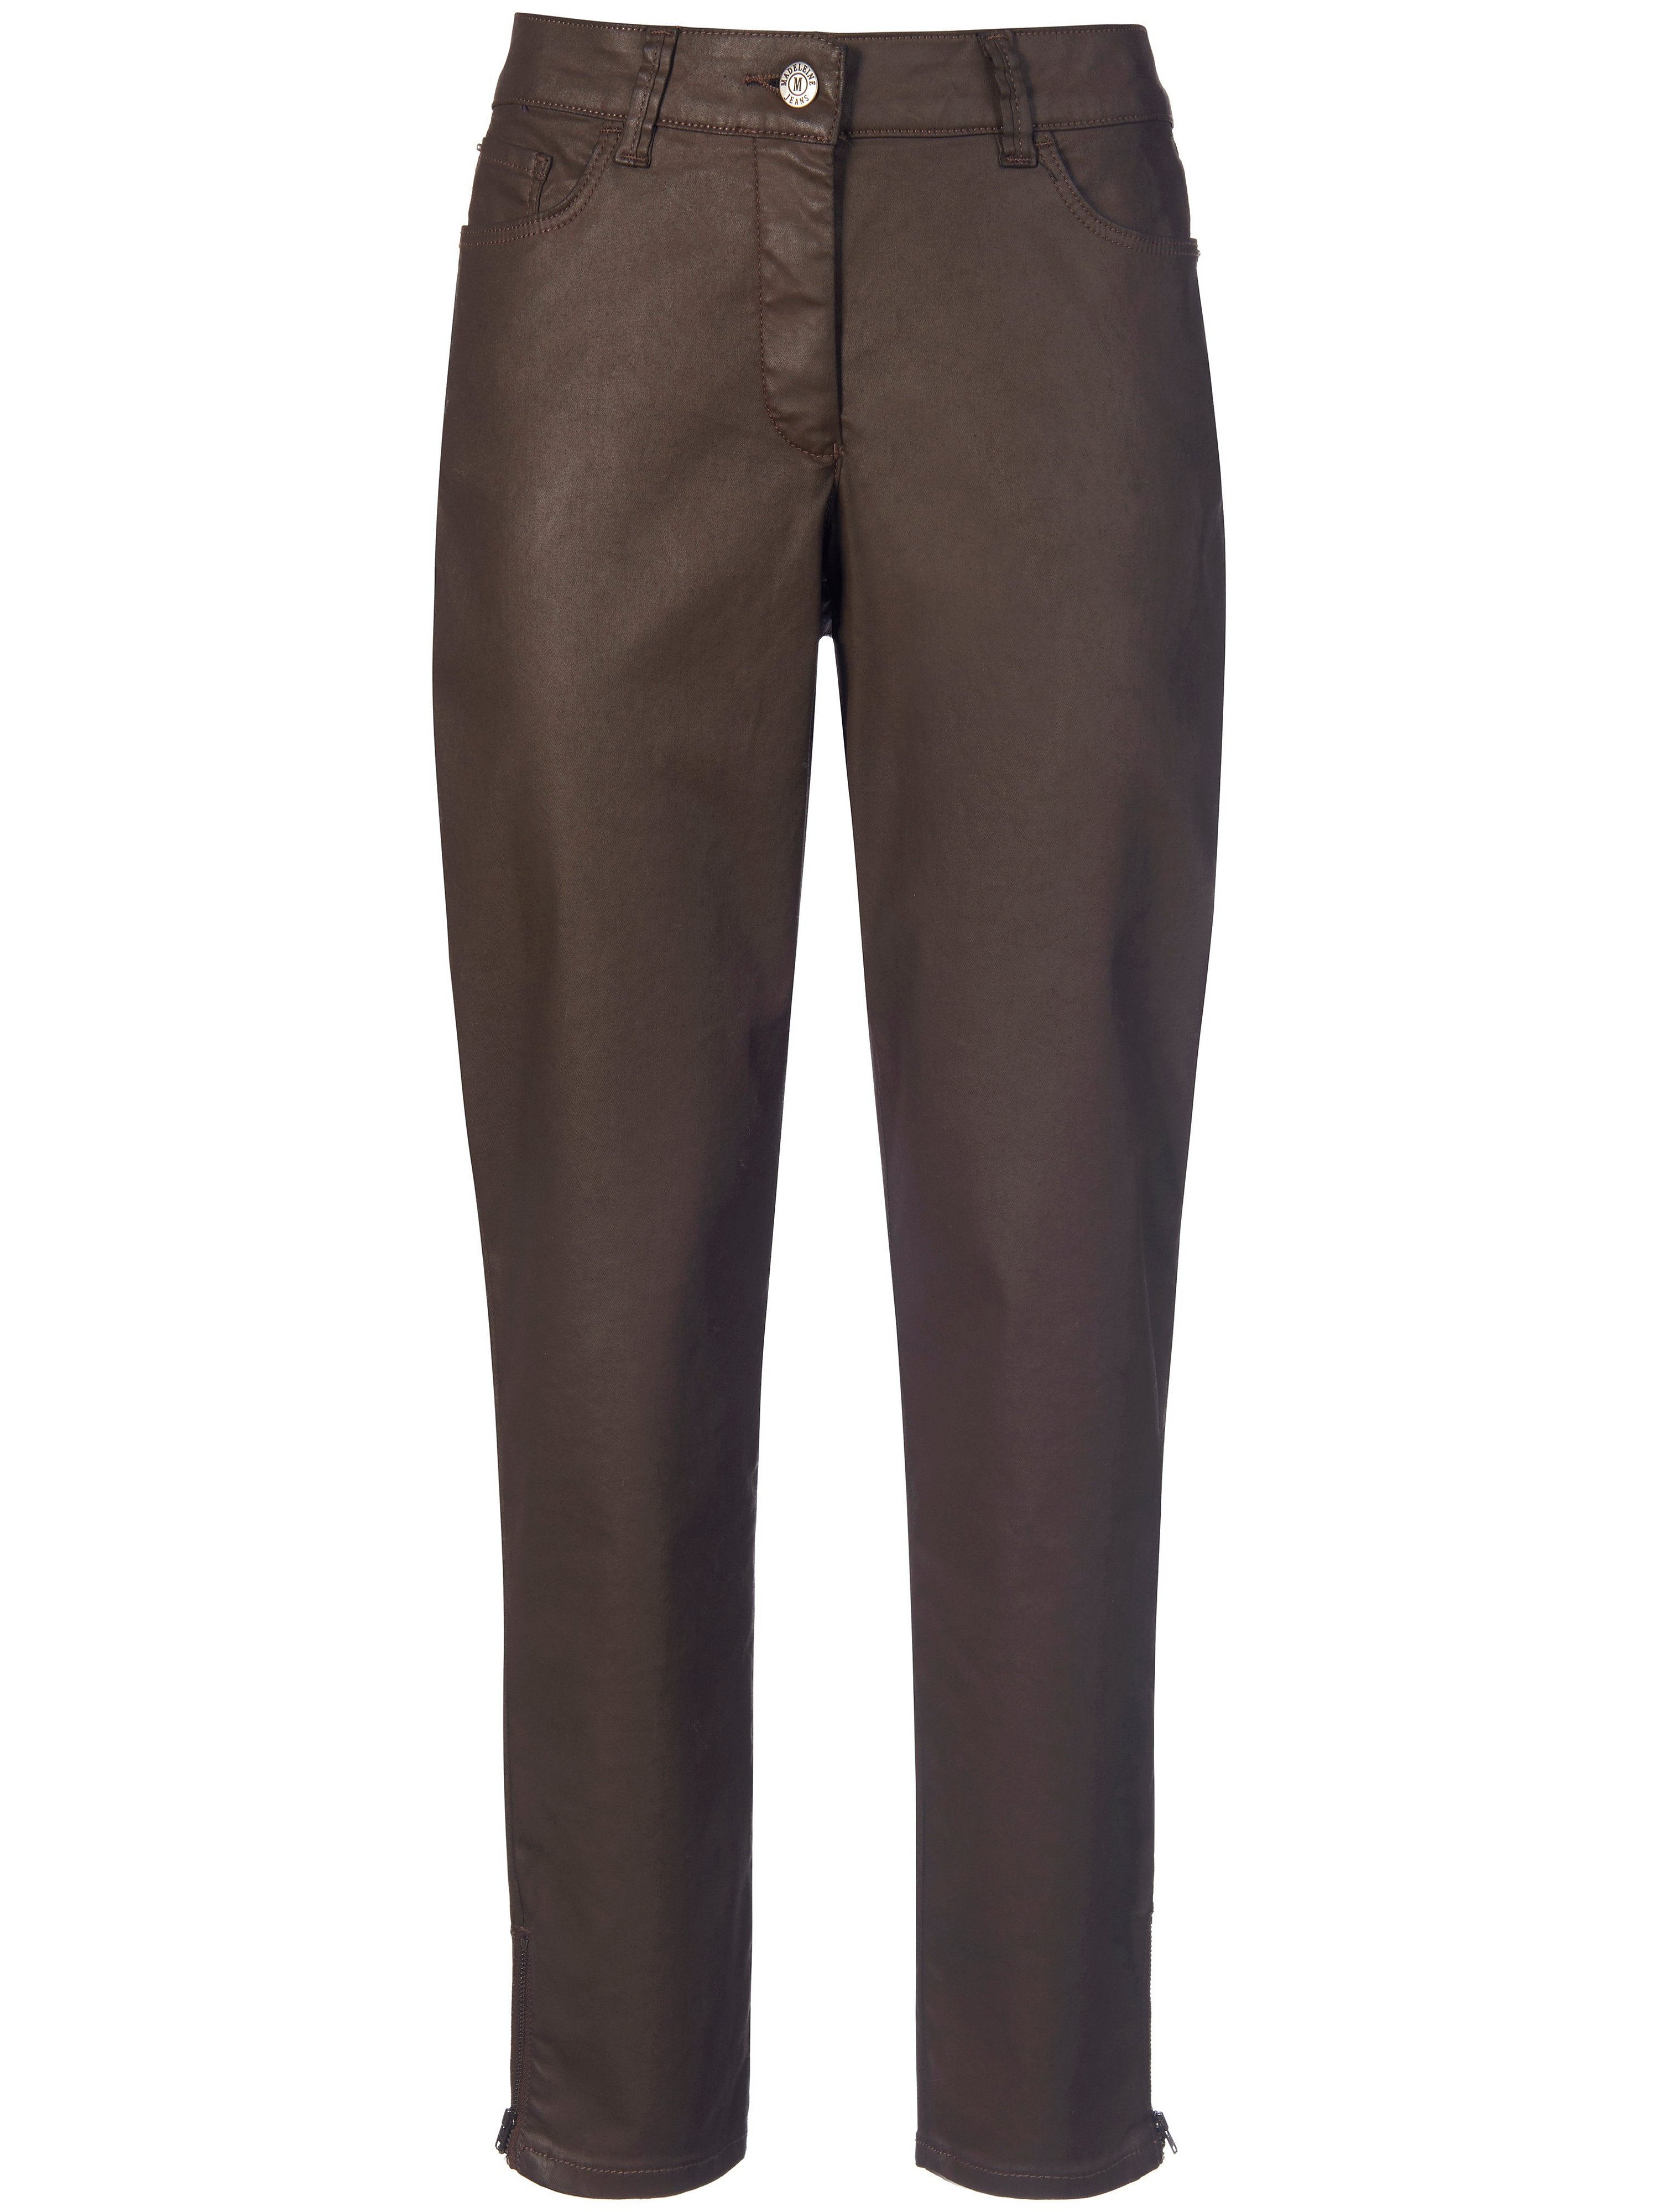 Le pantalon coton stretch  Peter Hahn marron taille 48